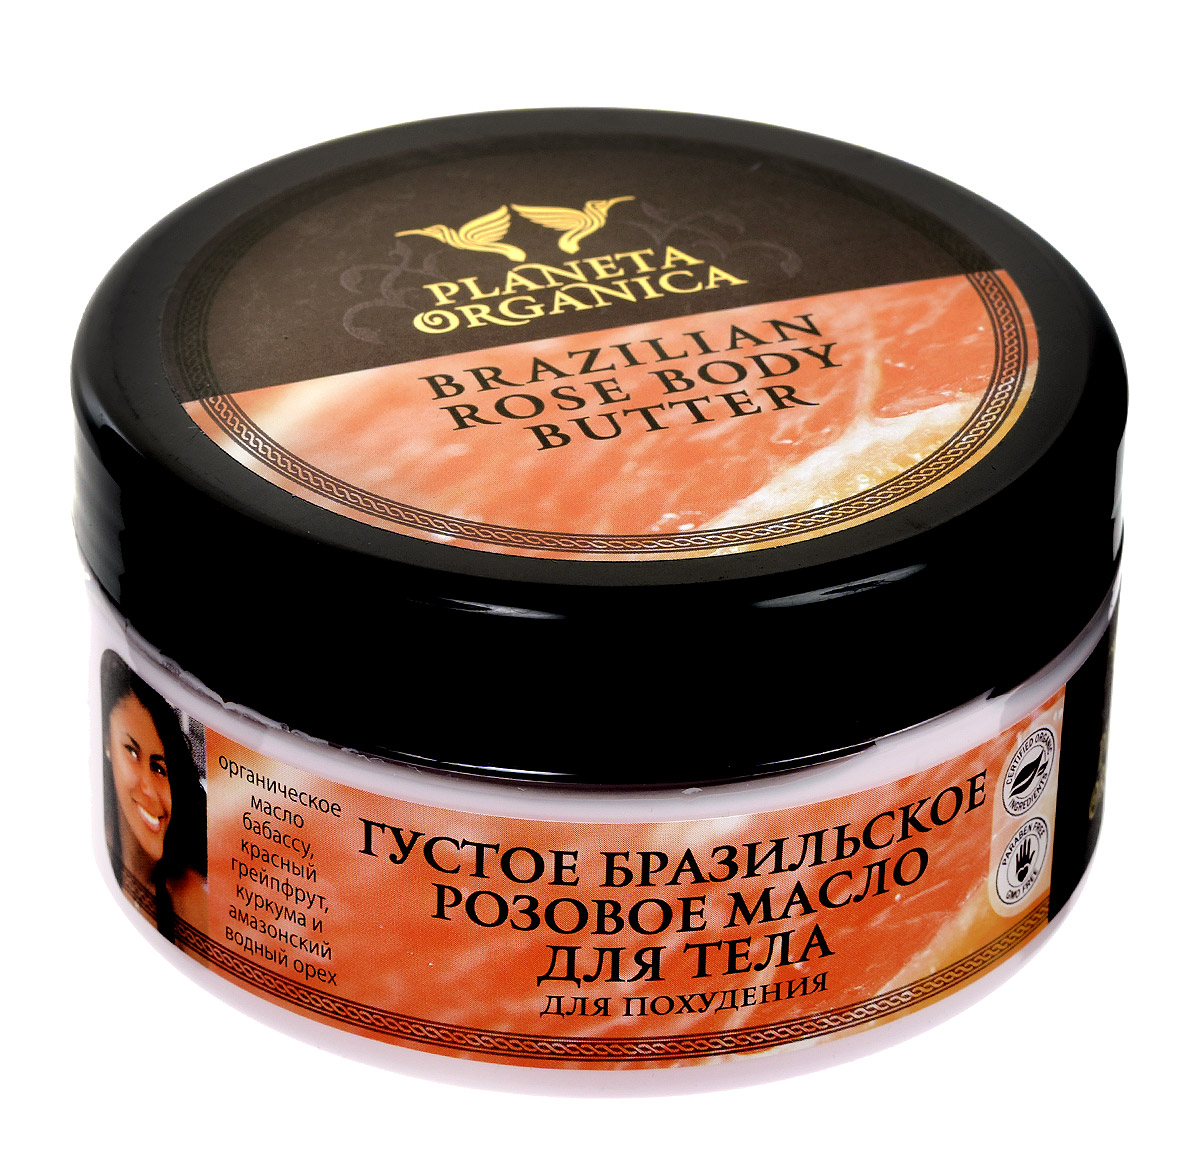 Planeta Organica Густое бразильское розовое масло для тела, для похудения, 300 мл